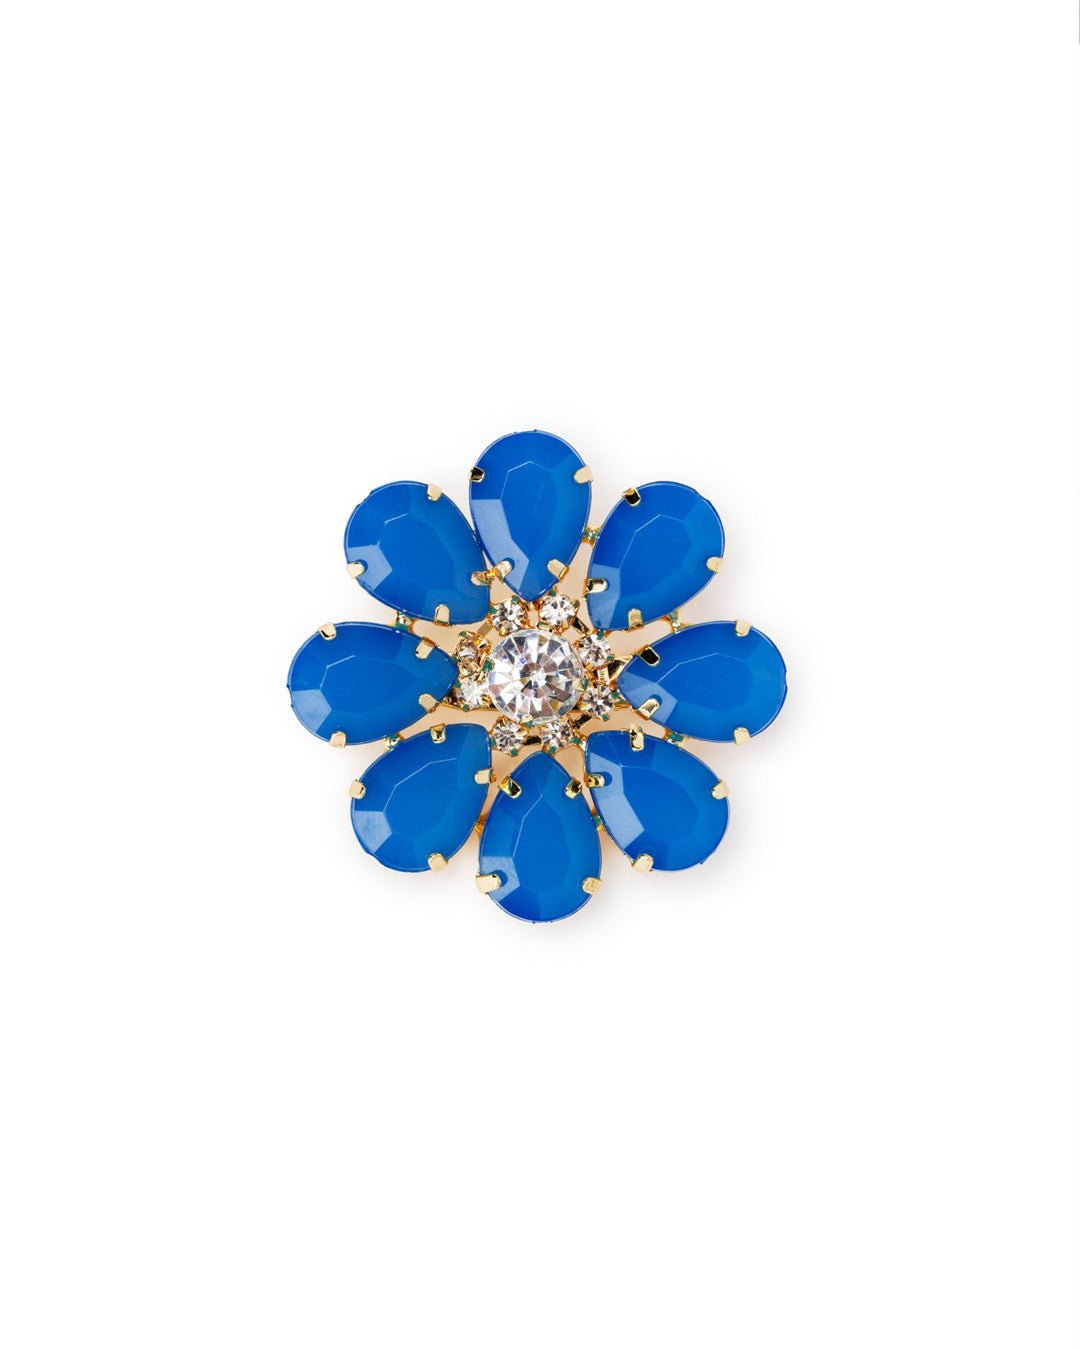 Spilla in ferro con fiore in resina blu - Mya Accessories